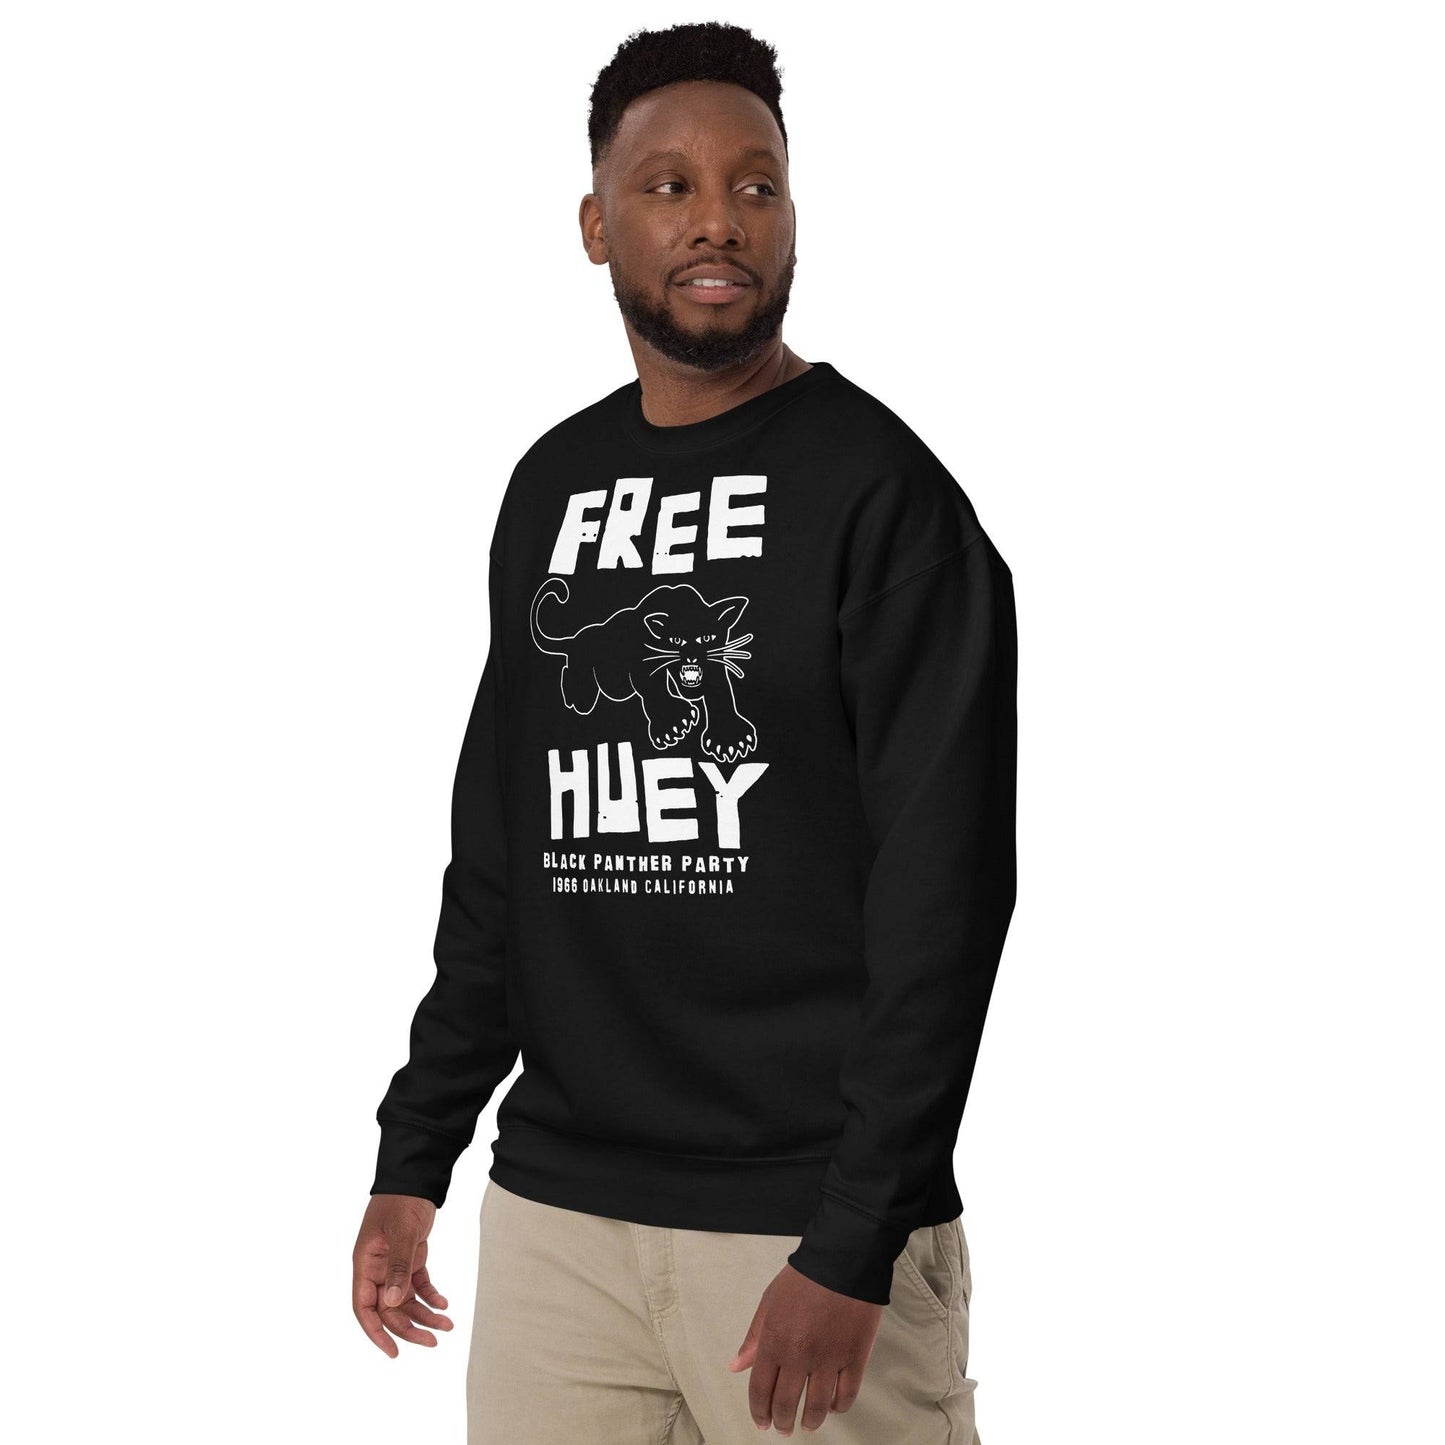 Free Huey BPP Premium Unisex Sweatshirt